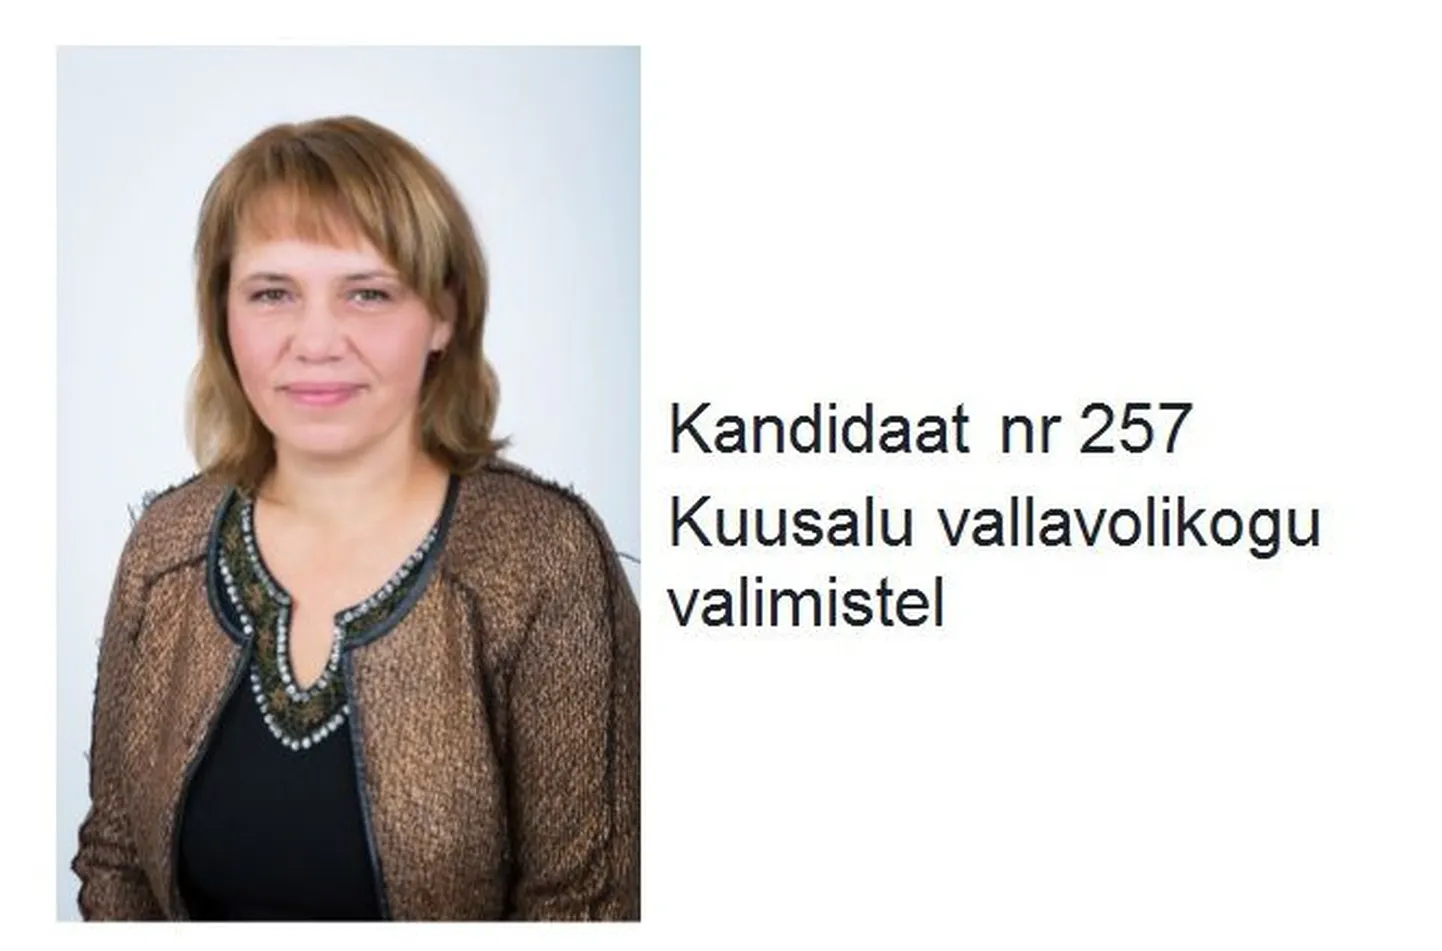 Anne Kiilaspää